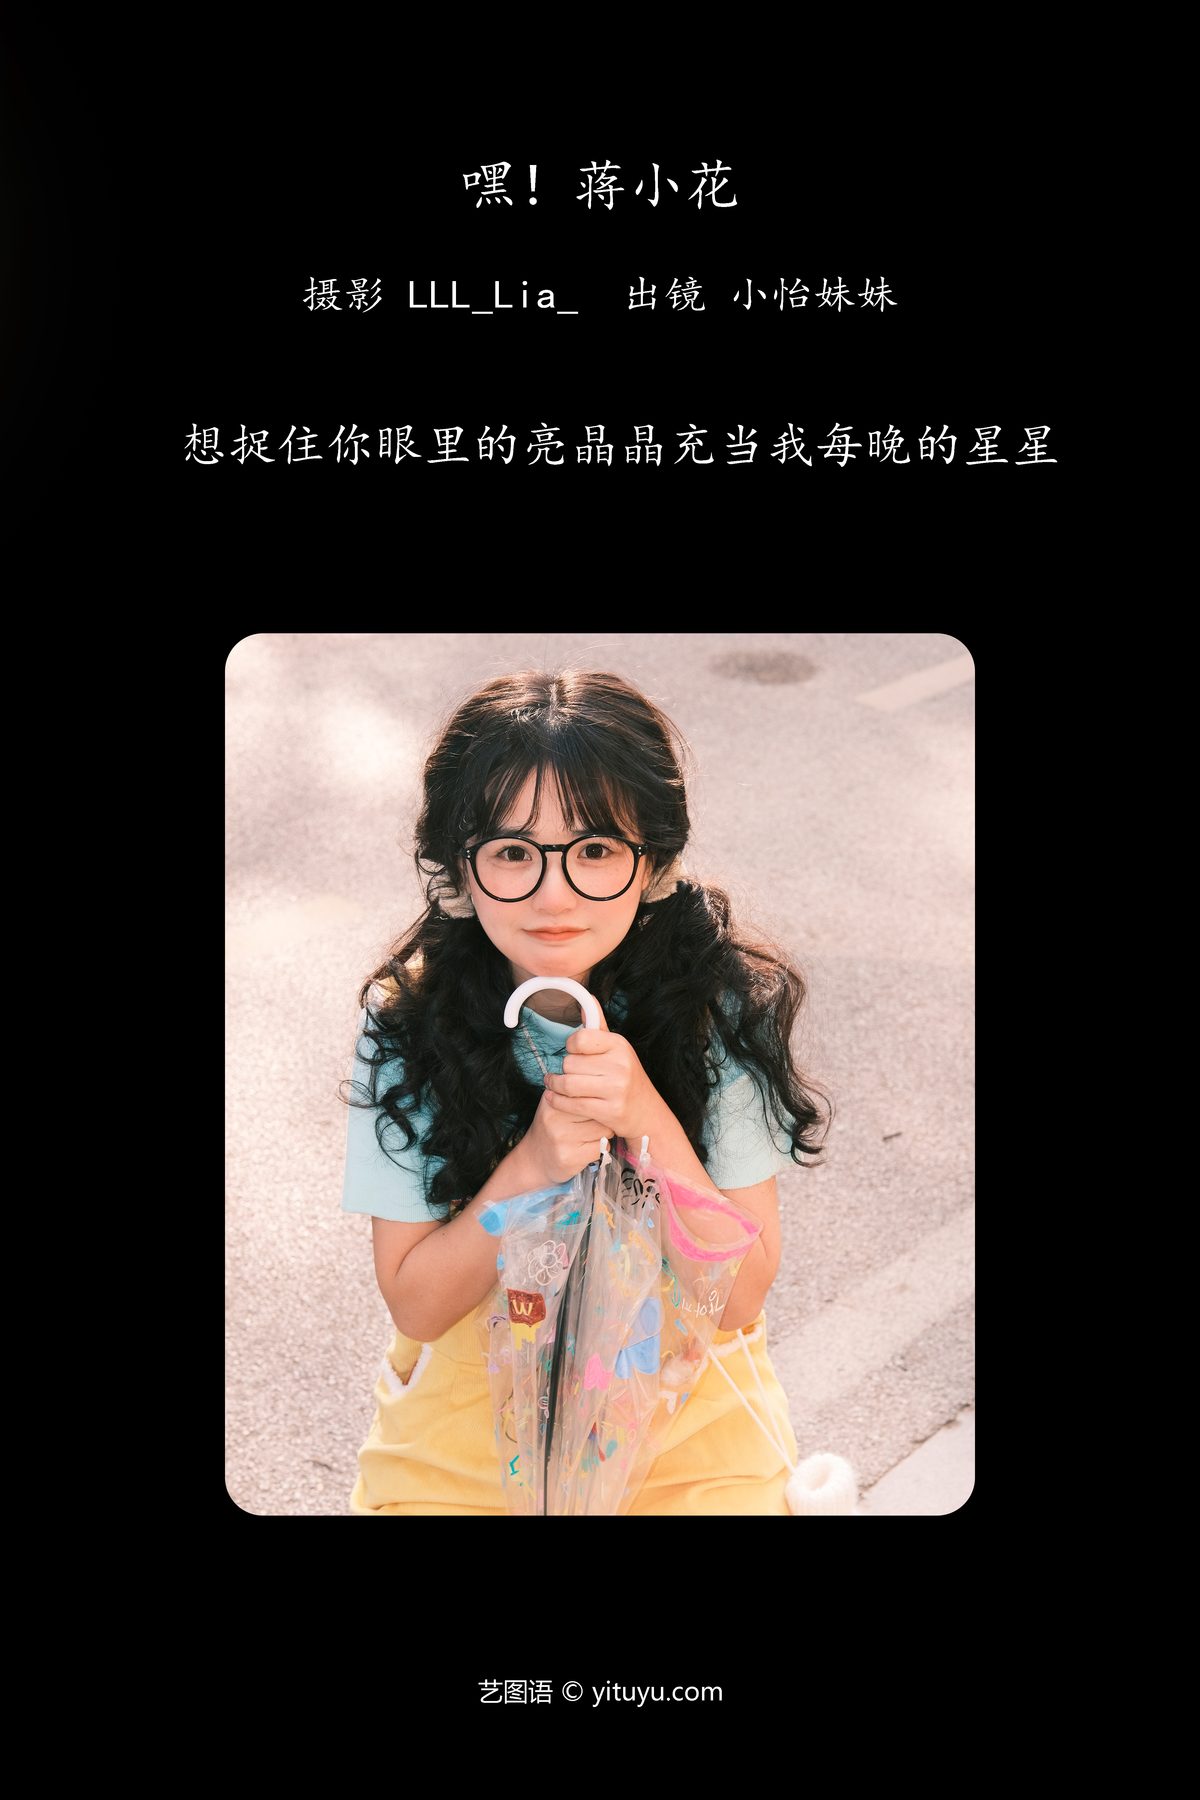 YiTuYu艺图语 Vol 6095 Xiao Yi Mei Mei Cute 0002 8421475050.jpg